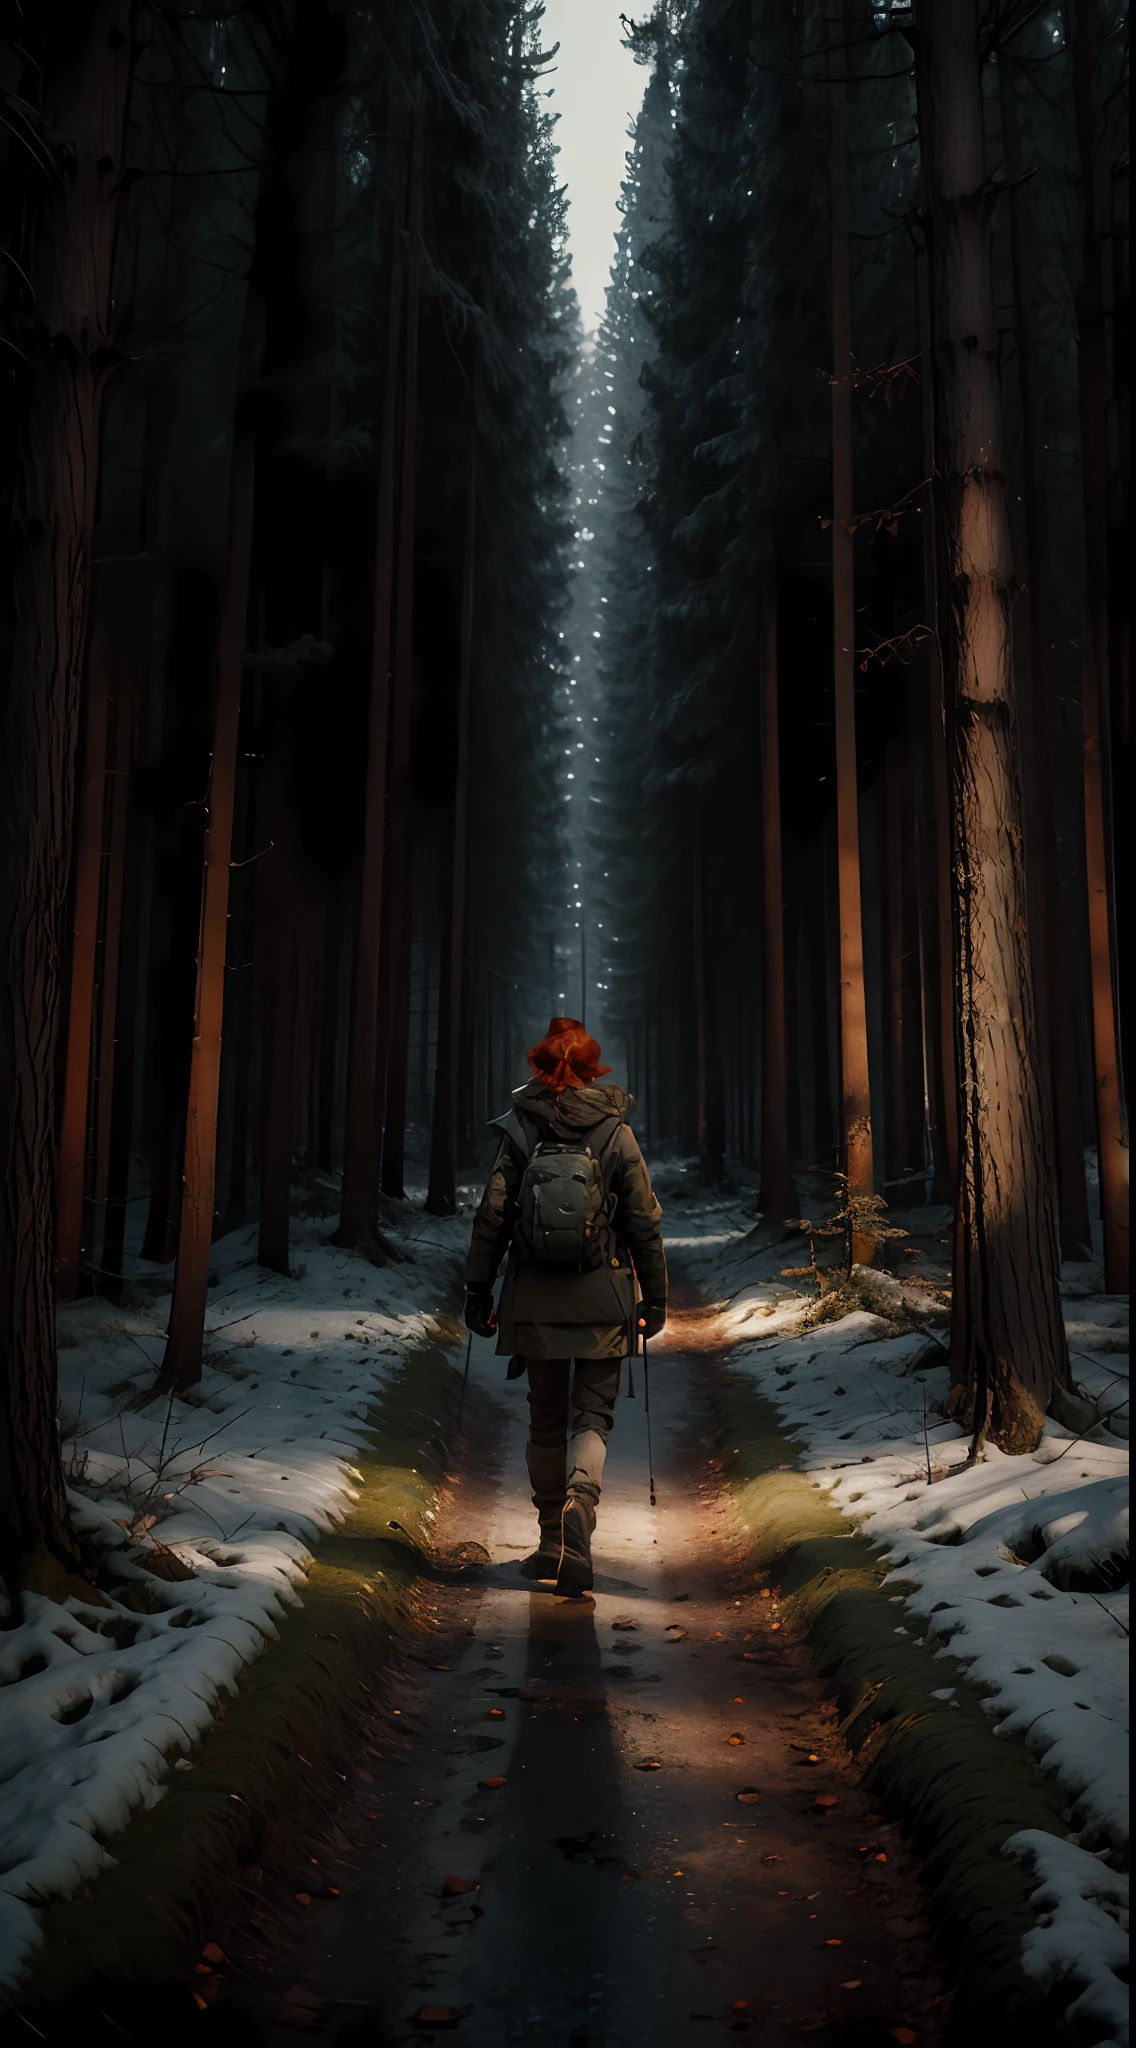 冬の夜、広場で懐中電灯を手に森の中を歩く赤毛の女性, 戻る, 軍の冬服, 8k, オクタンレンダリング, グレッグ・ラトコウスキー